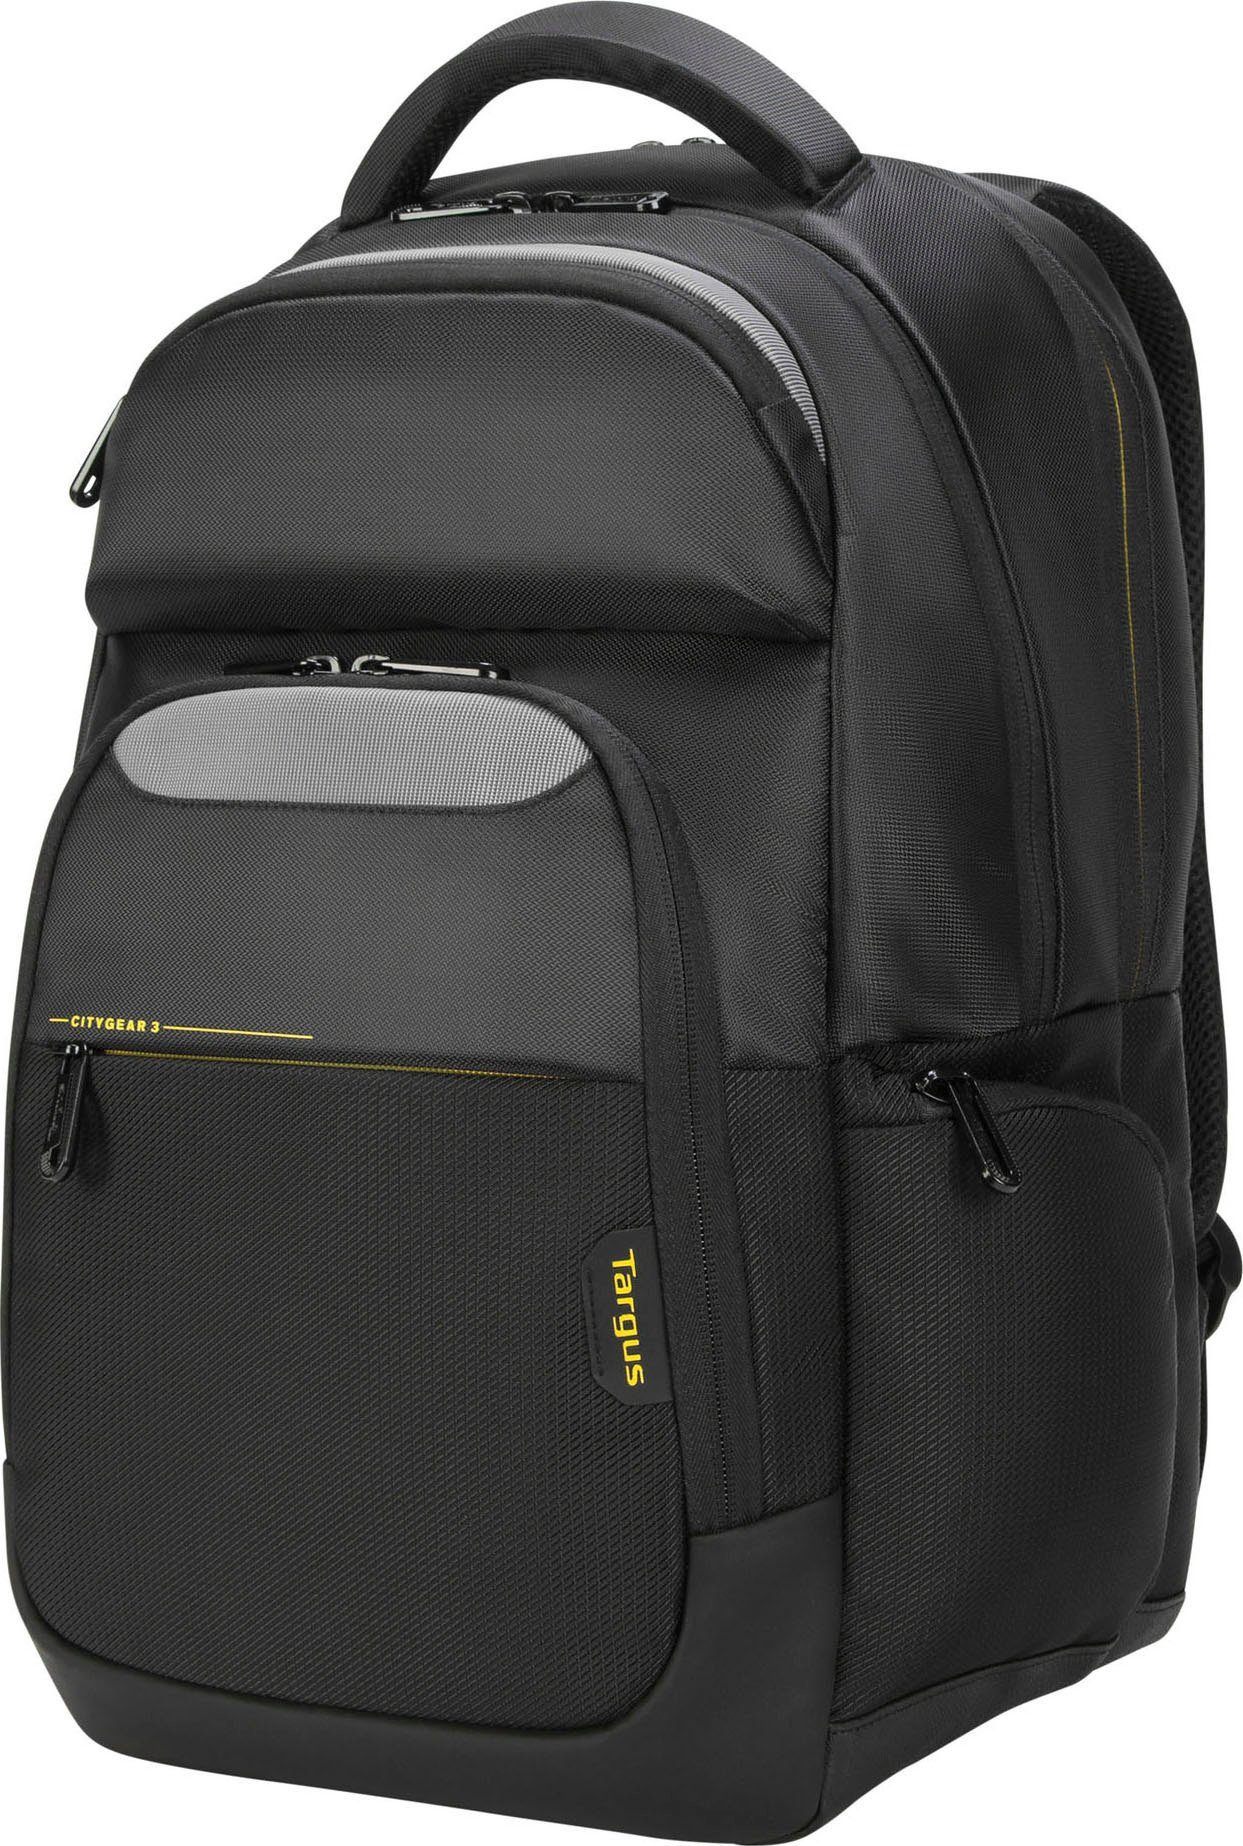 Targus Laptoptasche CG3 15.6 Backpack W raincover, Netztaschen und -fächer  mit Reißverschluss für optimale Organisation